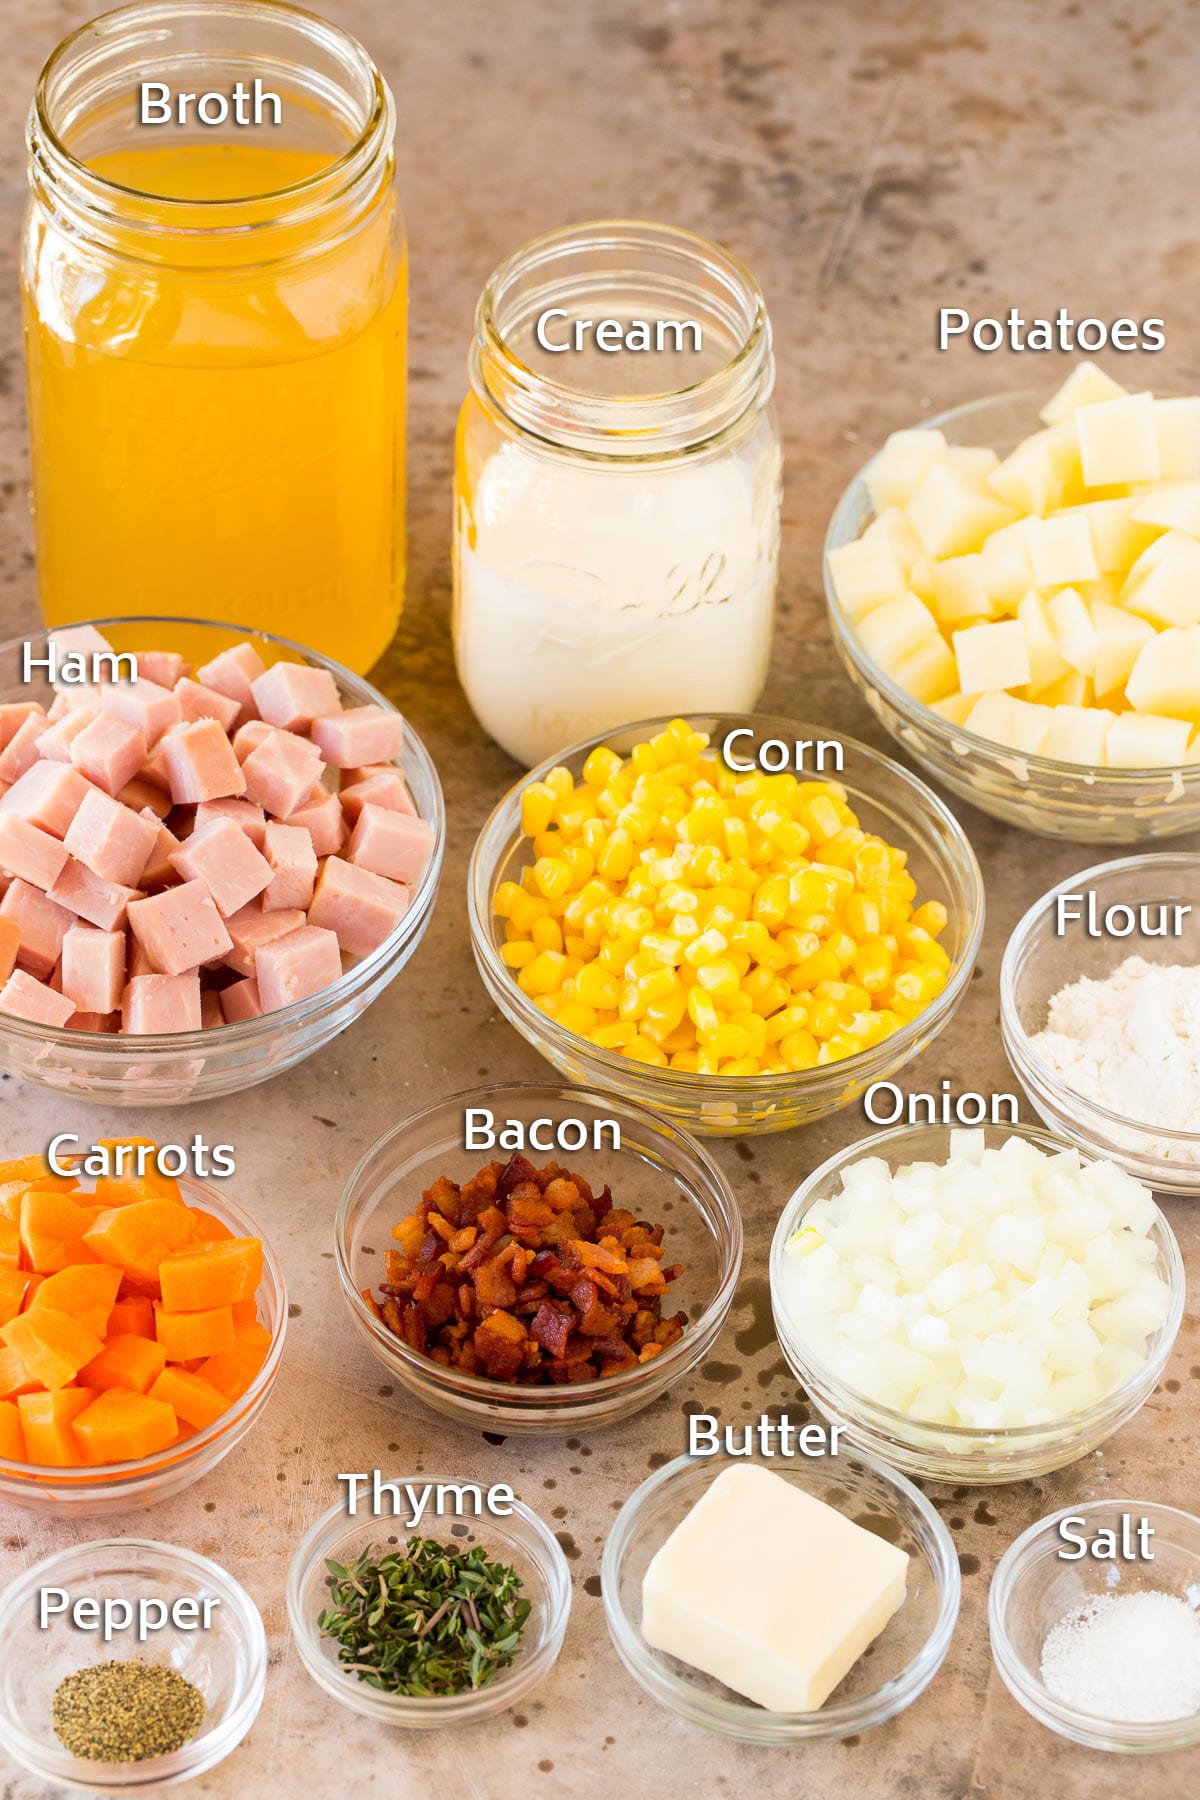 Bowls of ingredients including ham, seasonings, vegetables and potatoes.